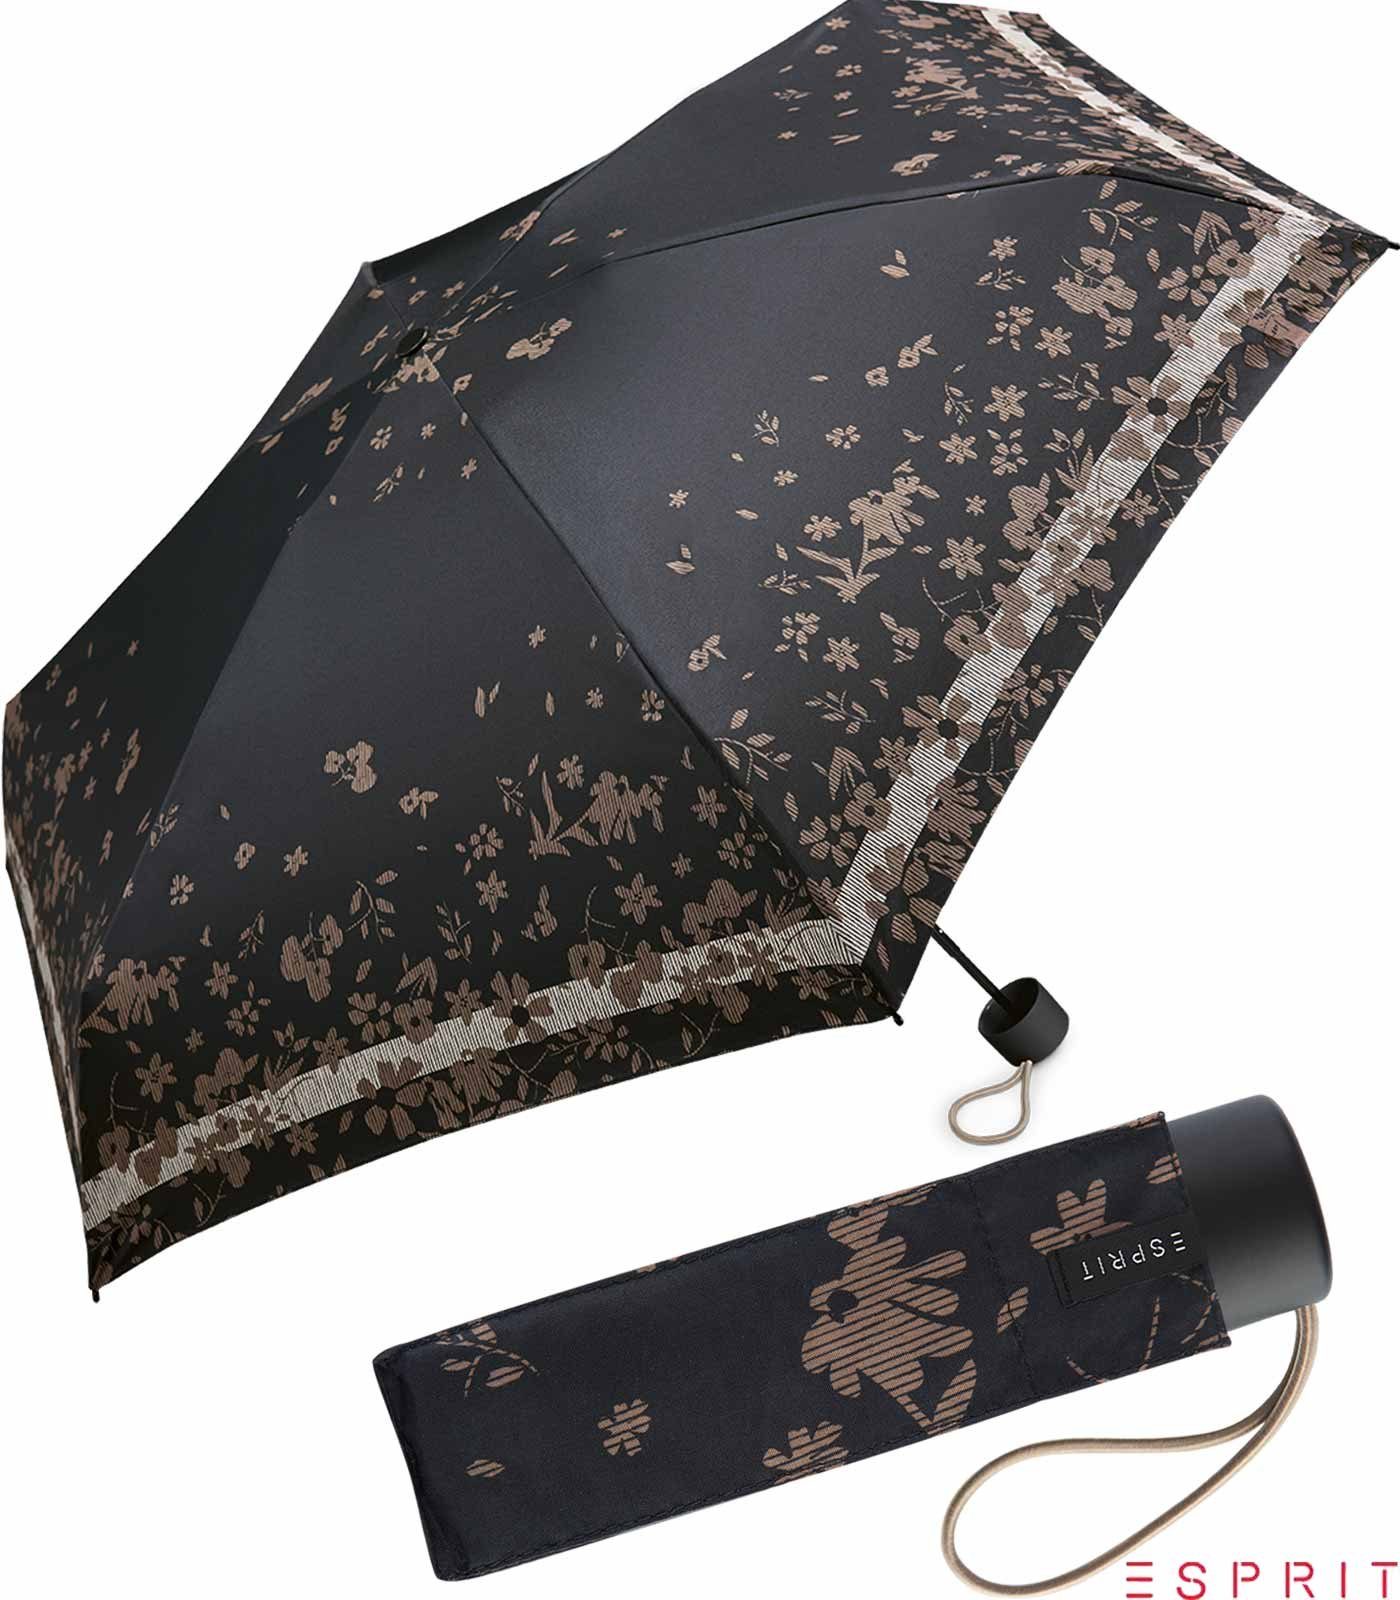 mit Super black, Flower klein, winzig Taschenregenschirm Damen - Mini Poetry Blumenmuster Esprit schwarz Regenschirm Petito